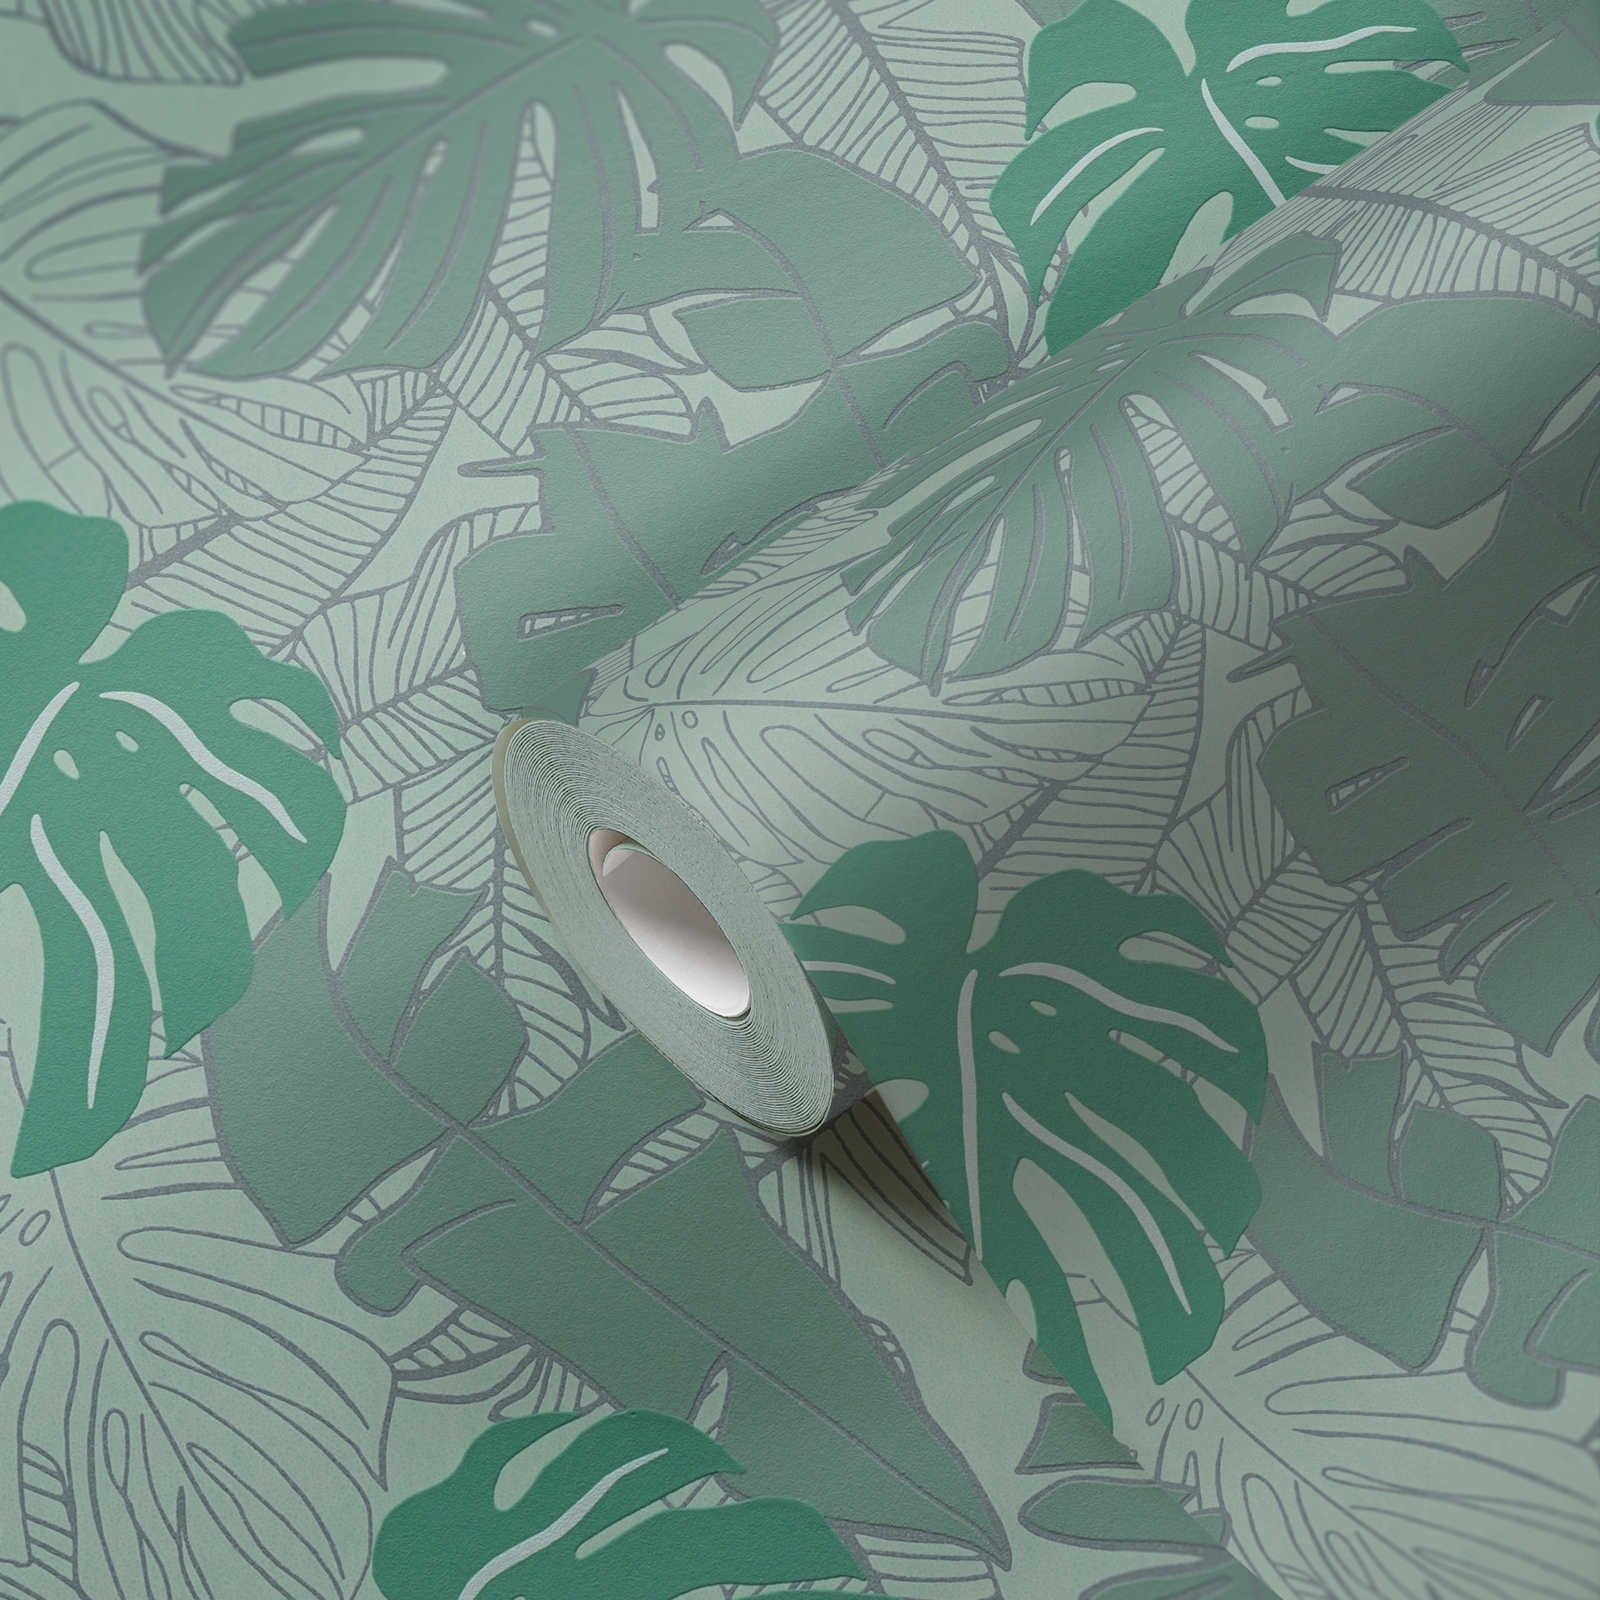             Dschungeltapete mit glänzendem Muster – Grün, Metallic
        